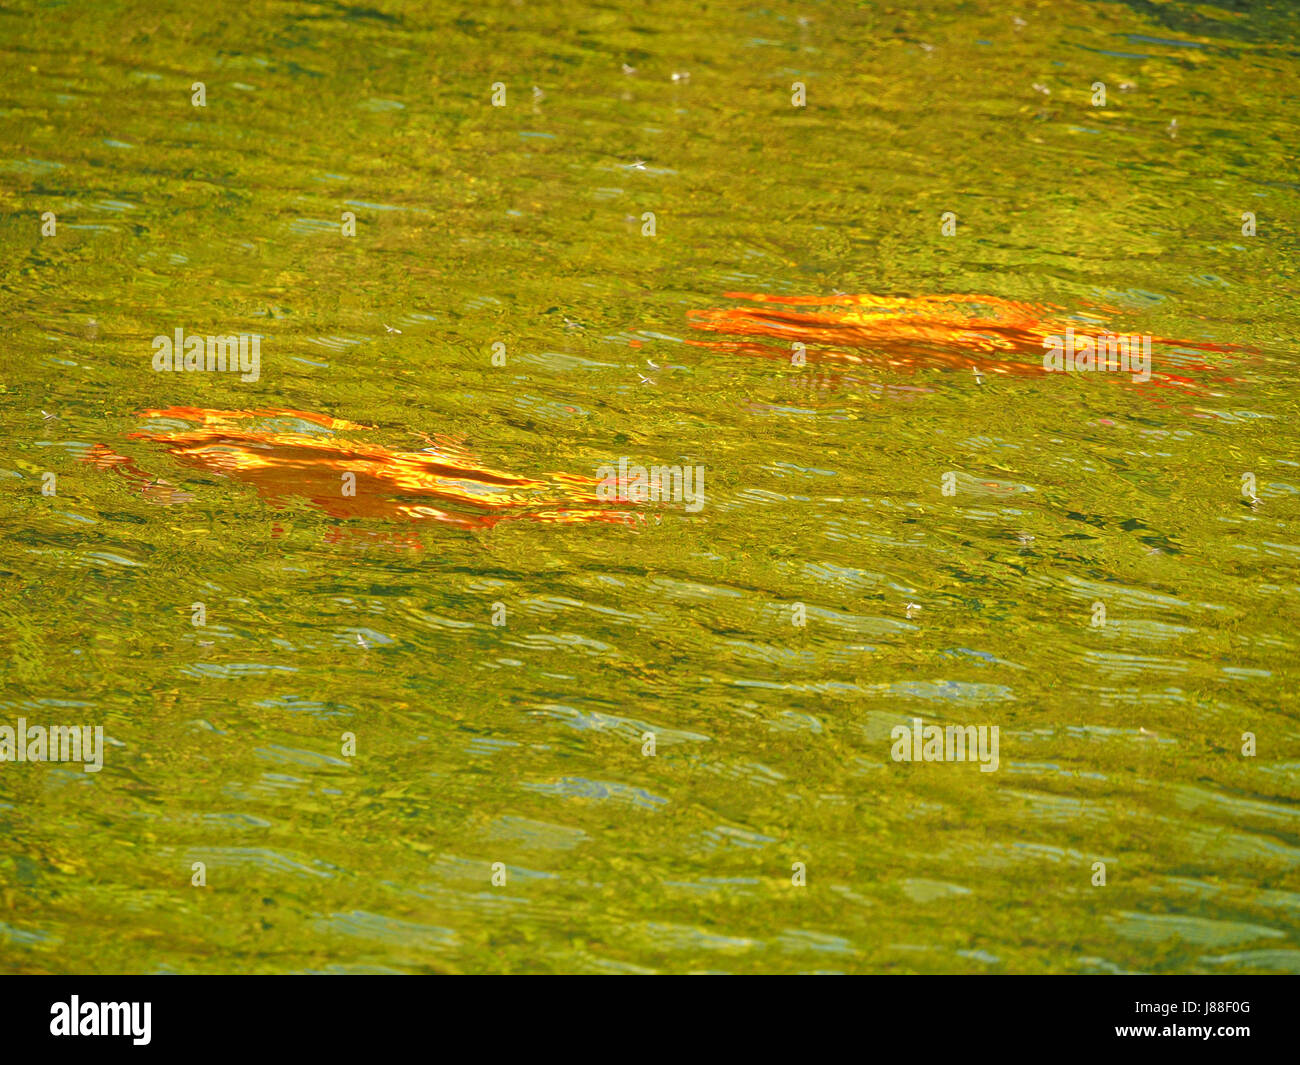 Koi Carp goldfish (Cyprinus carpio) swimming in pond in Yorkshire, England UK Stock Photo